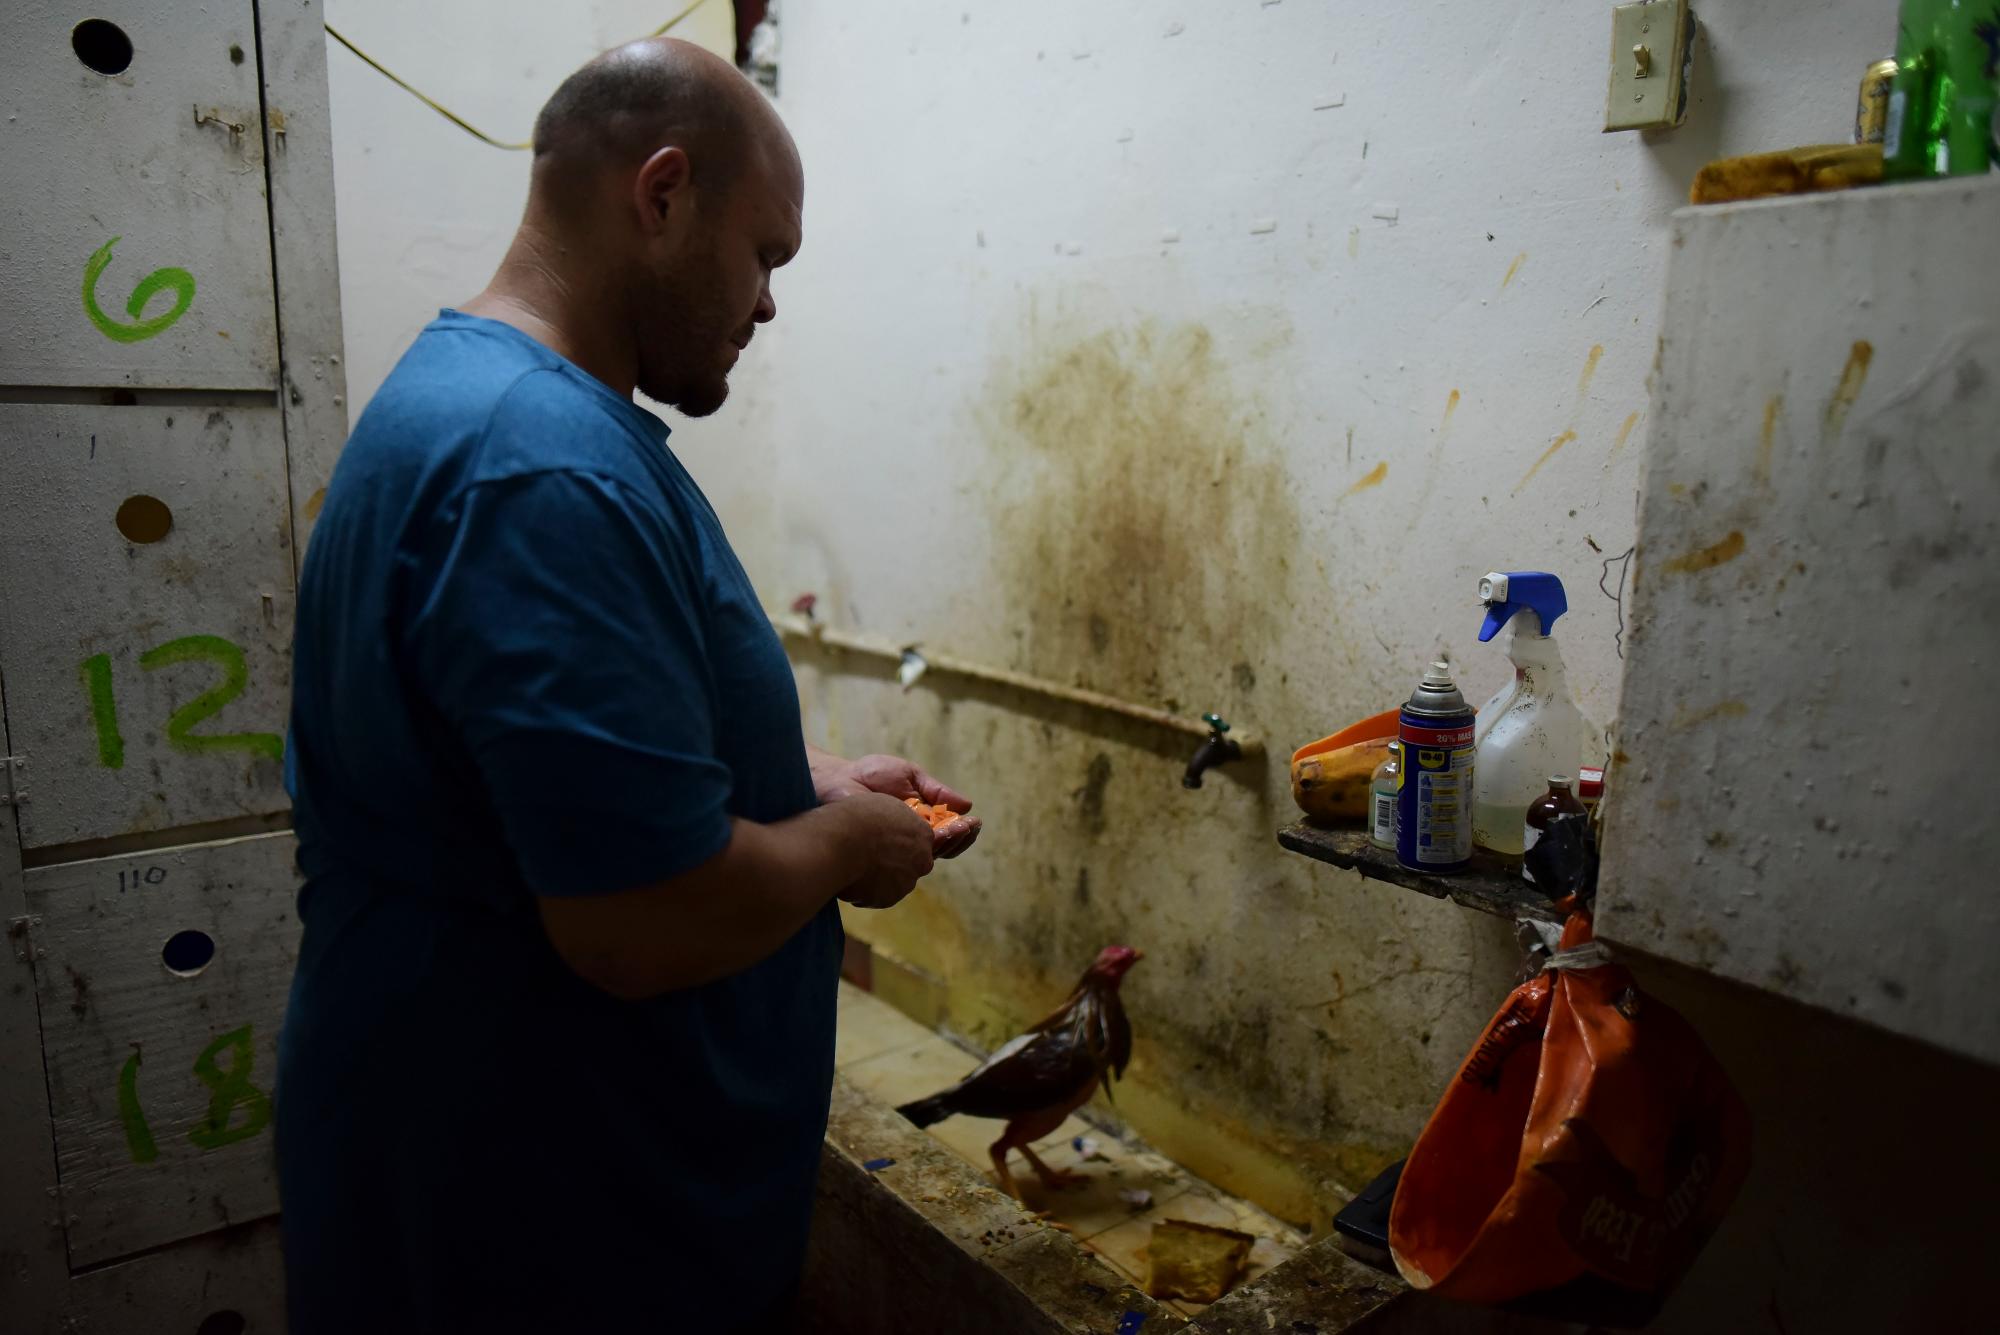 El sanador de gallos de pelea Rubén Rivera da tratamiento a gallos heridos en el club de peleas de gallos Campanillas, en Toa Baja, Puerto Rico, el miércoles 18 de diciembre de 2019. Las autoridades estiman que la industria genera $ 18 millones al año y emplea a unas 27,000 personas, como Rivera. 